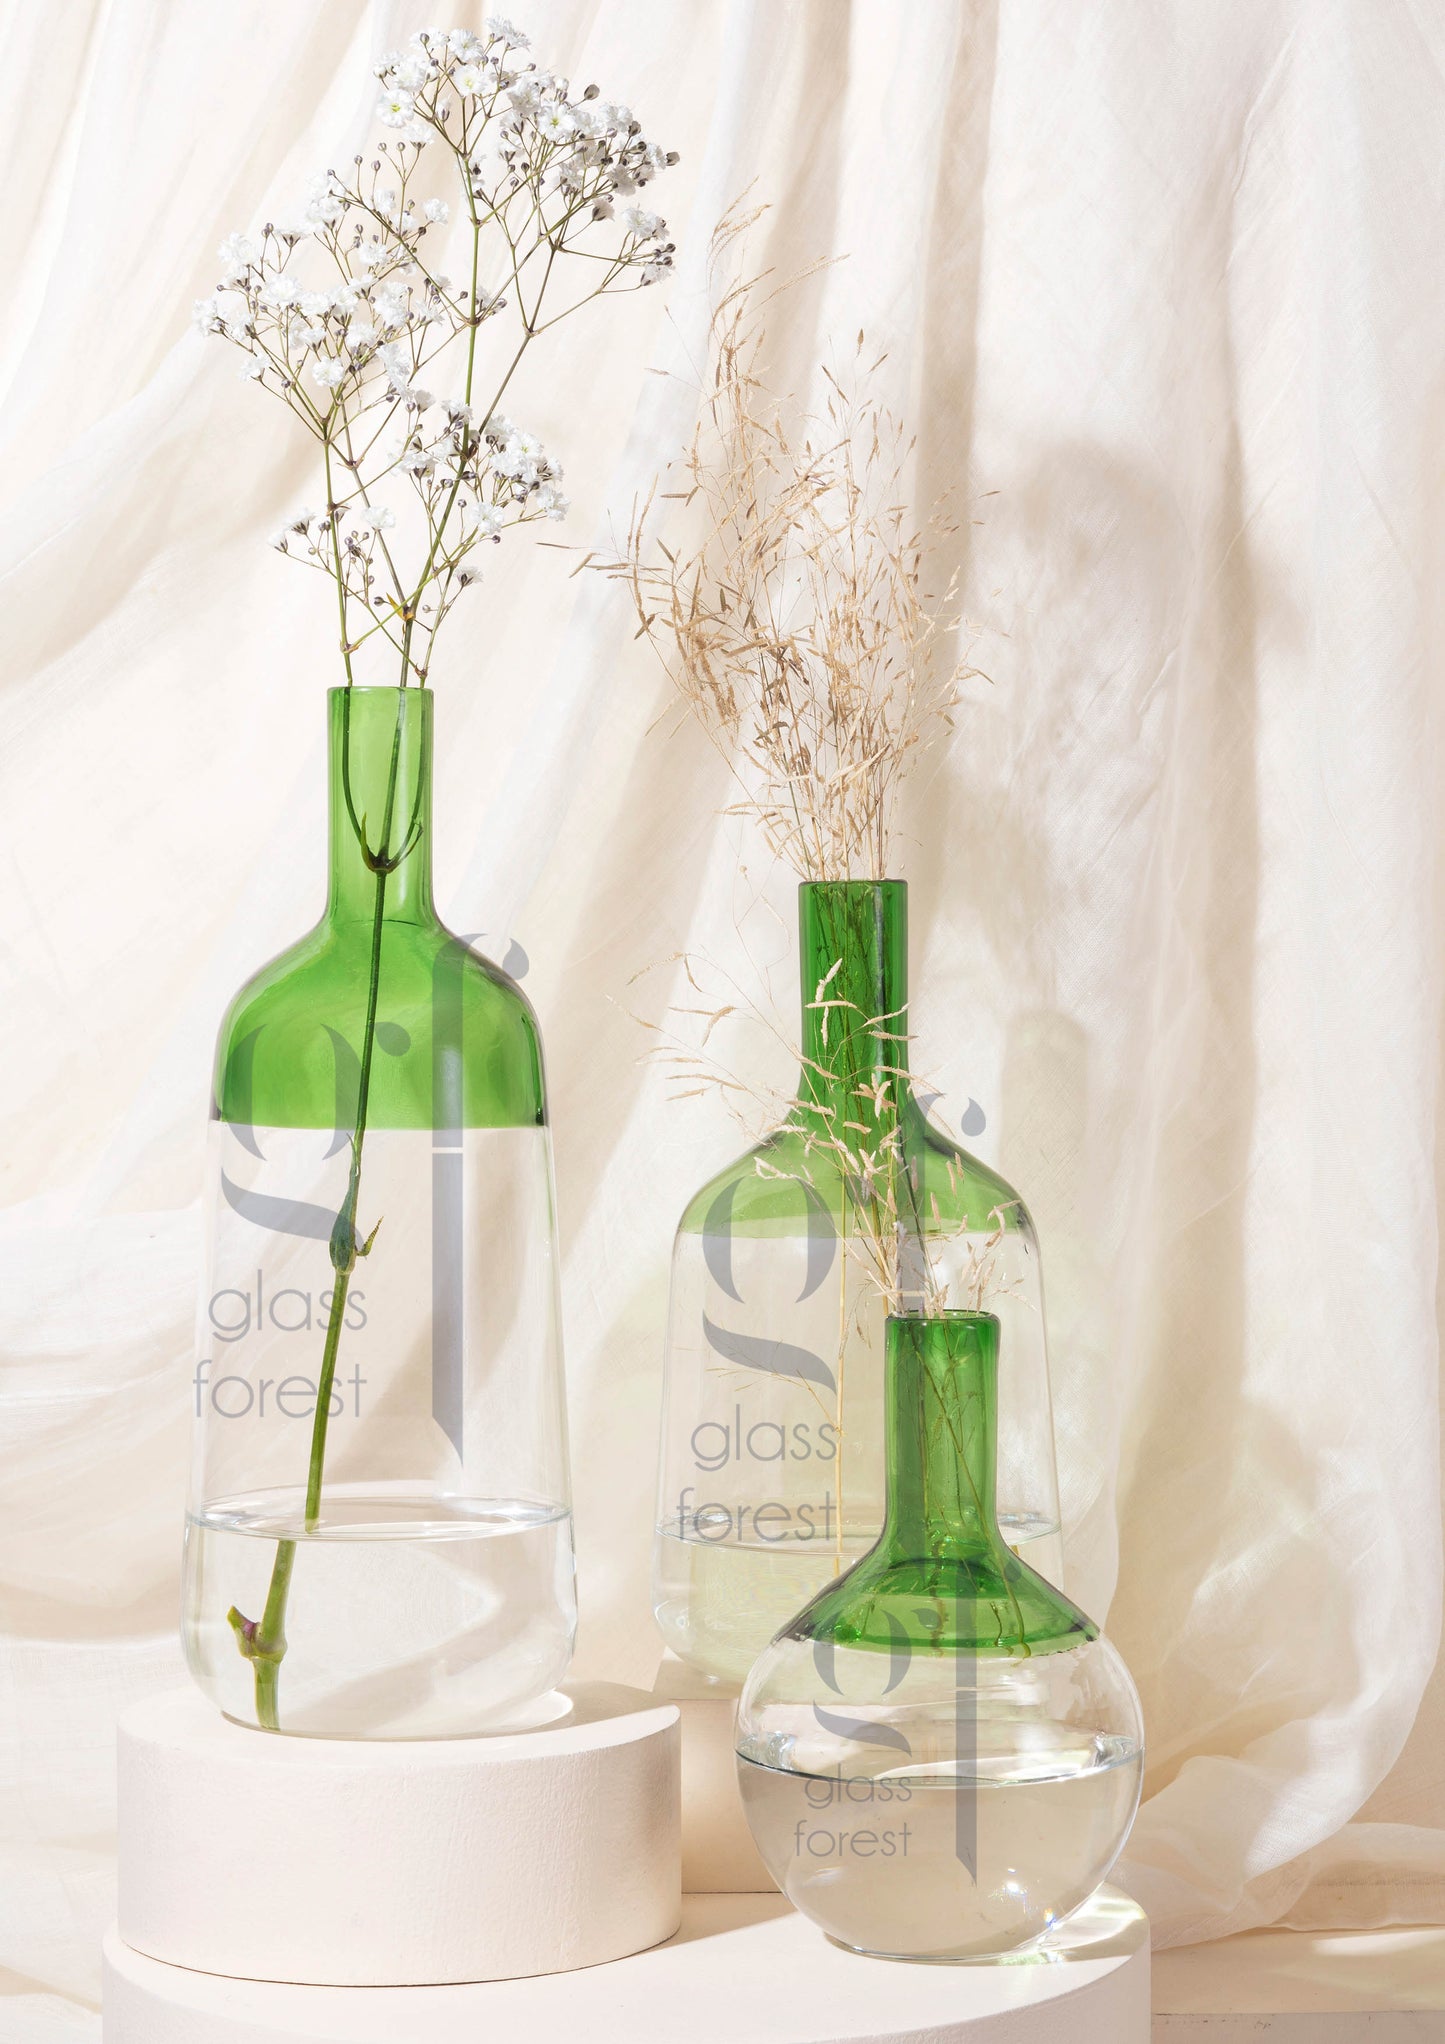 Iris Vases - Green